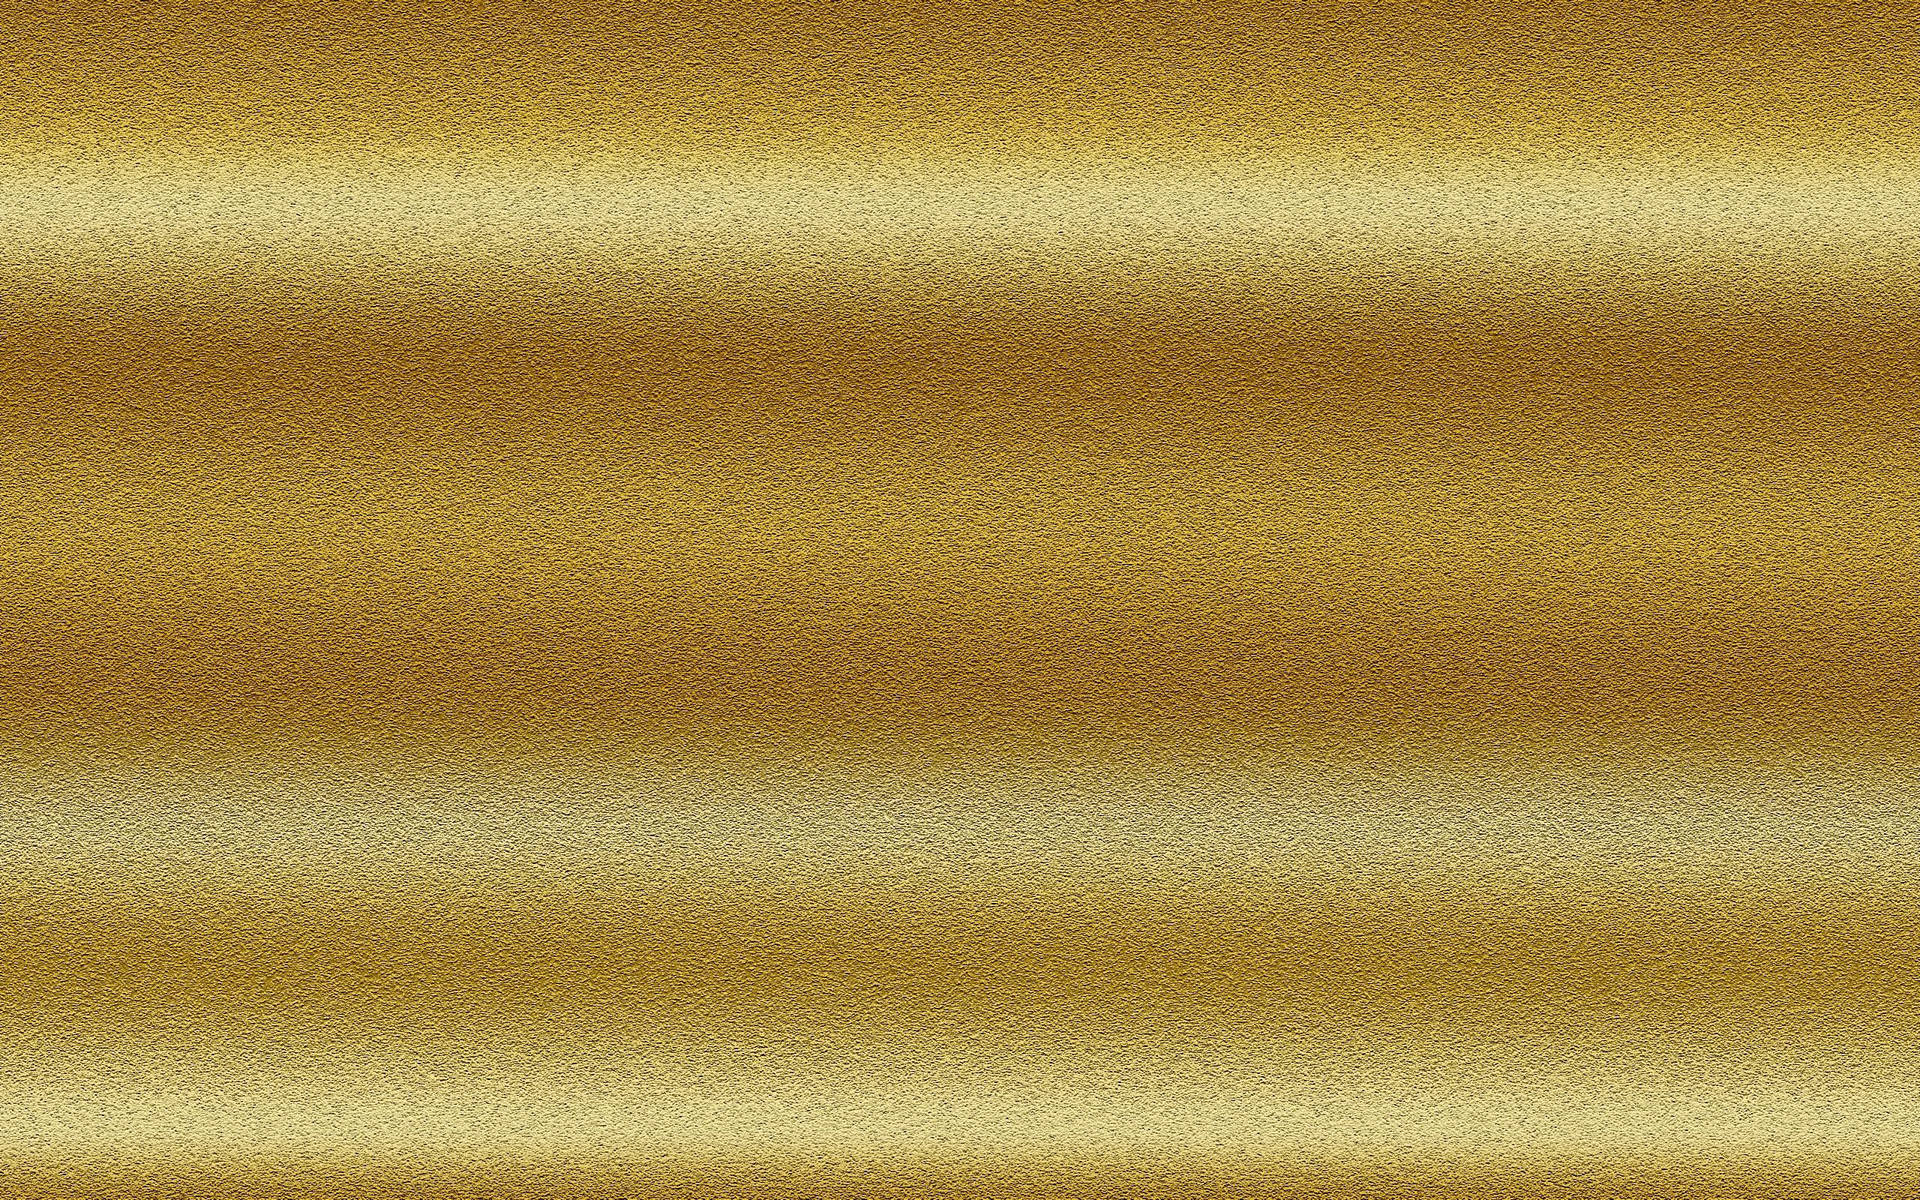 Gold 2560X1600 wallpaper